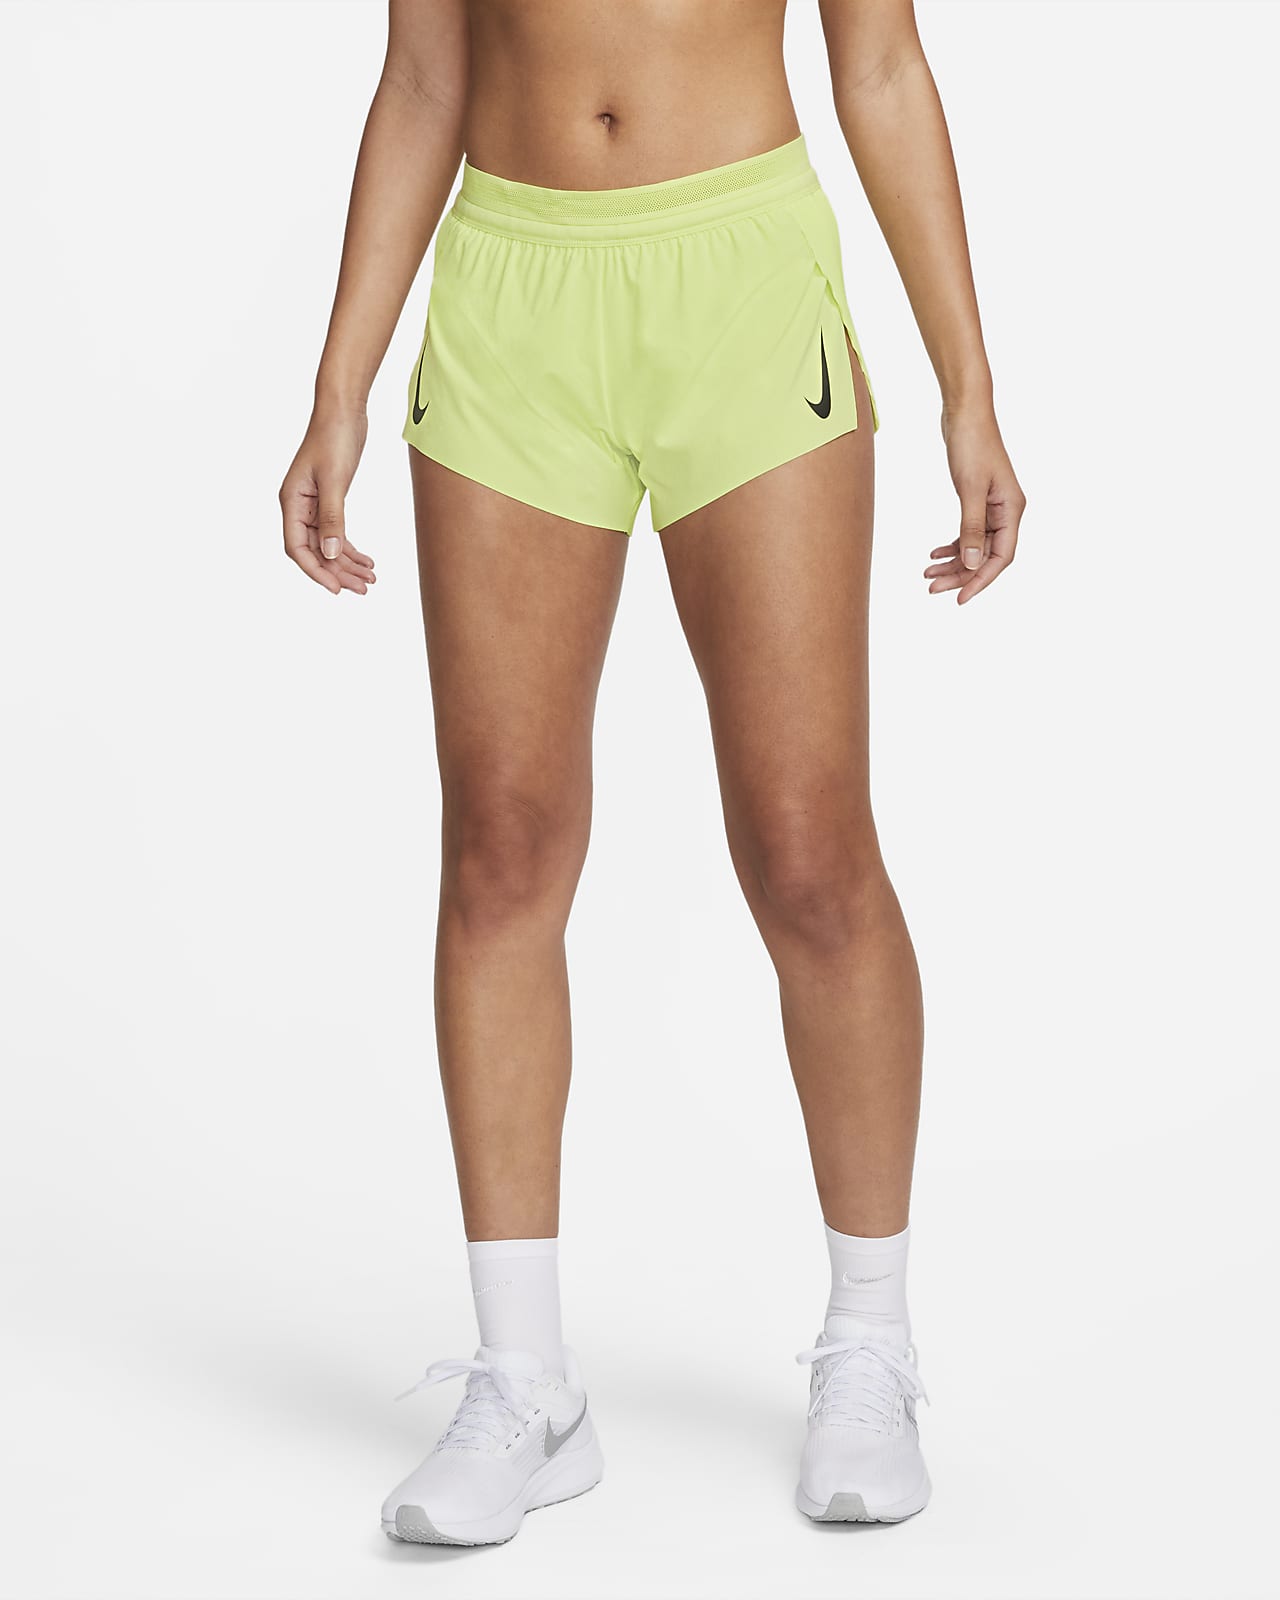 nike running shorts size chart women's